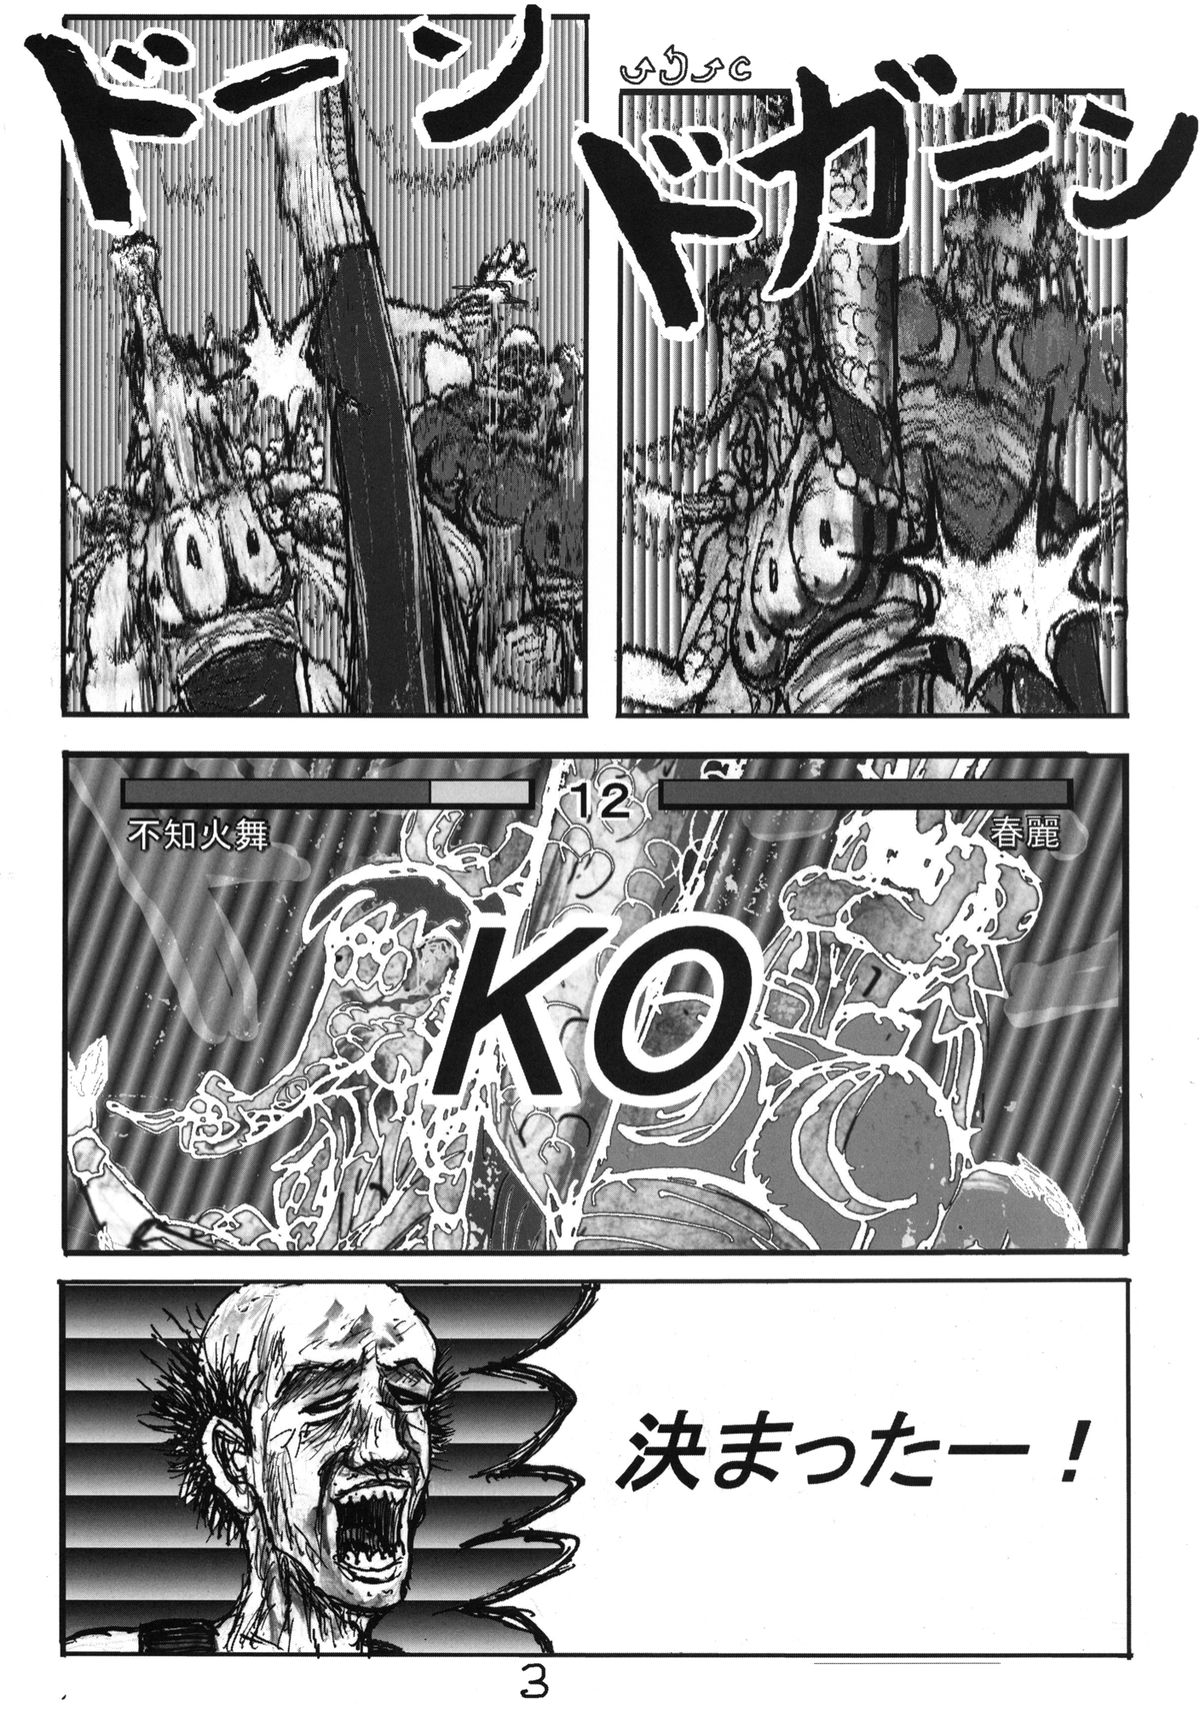 [Motsu Ryouri (Motsu)] Shiranui Mai Hikoushiki FC Event 2 (King of Fighters) [Digital] page 19 full